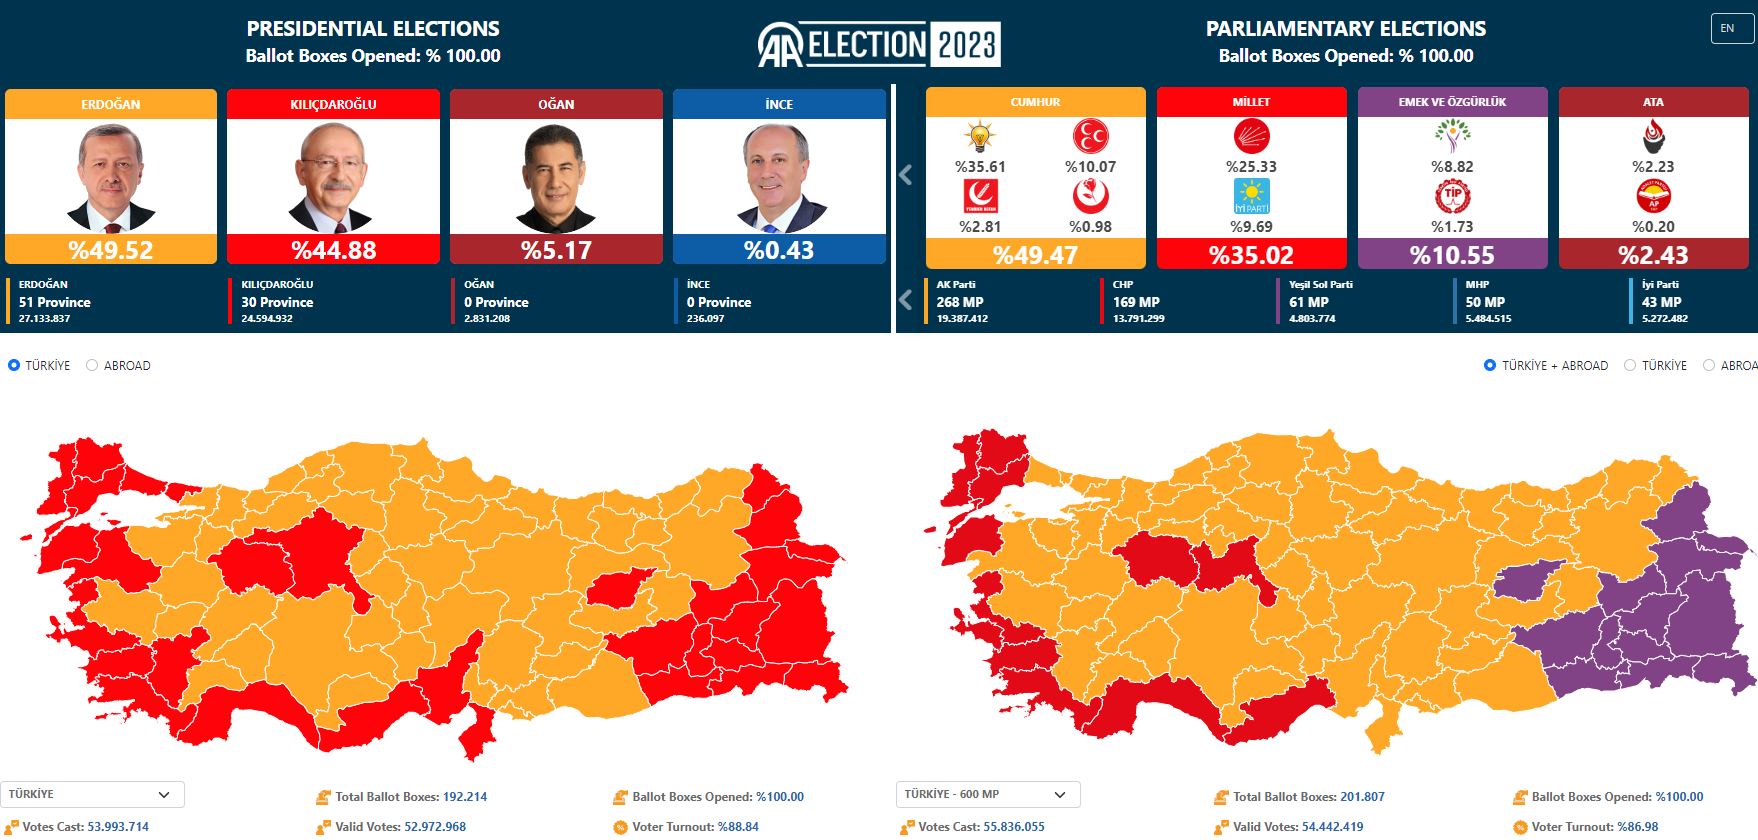 Αυτά είναι τα τελικά αποτελέσματα των τουρκικών εκλογών - Ερντογάν 49,52%, Kirikda Rogul 44,88%